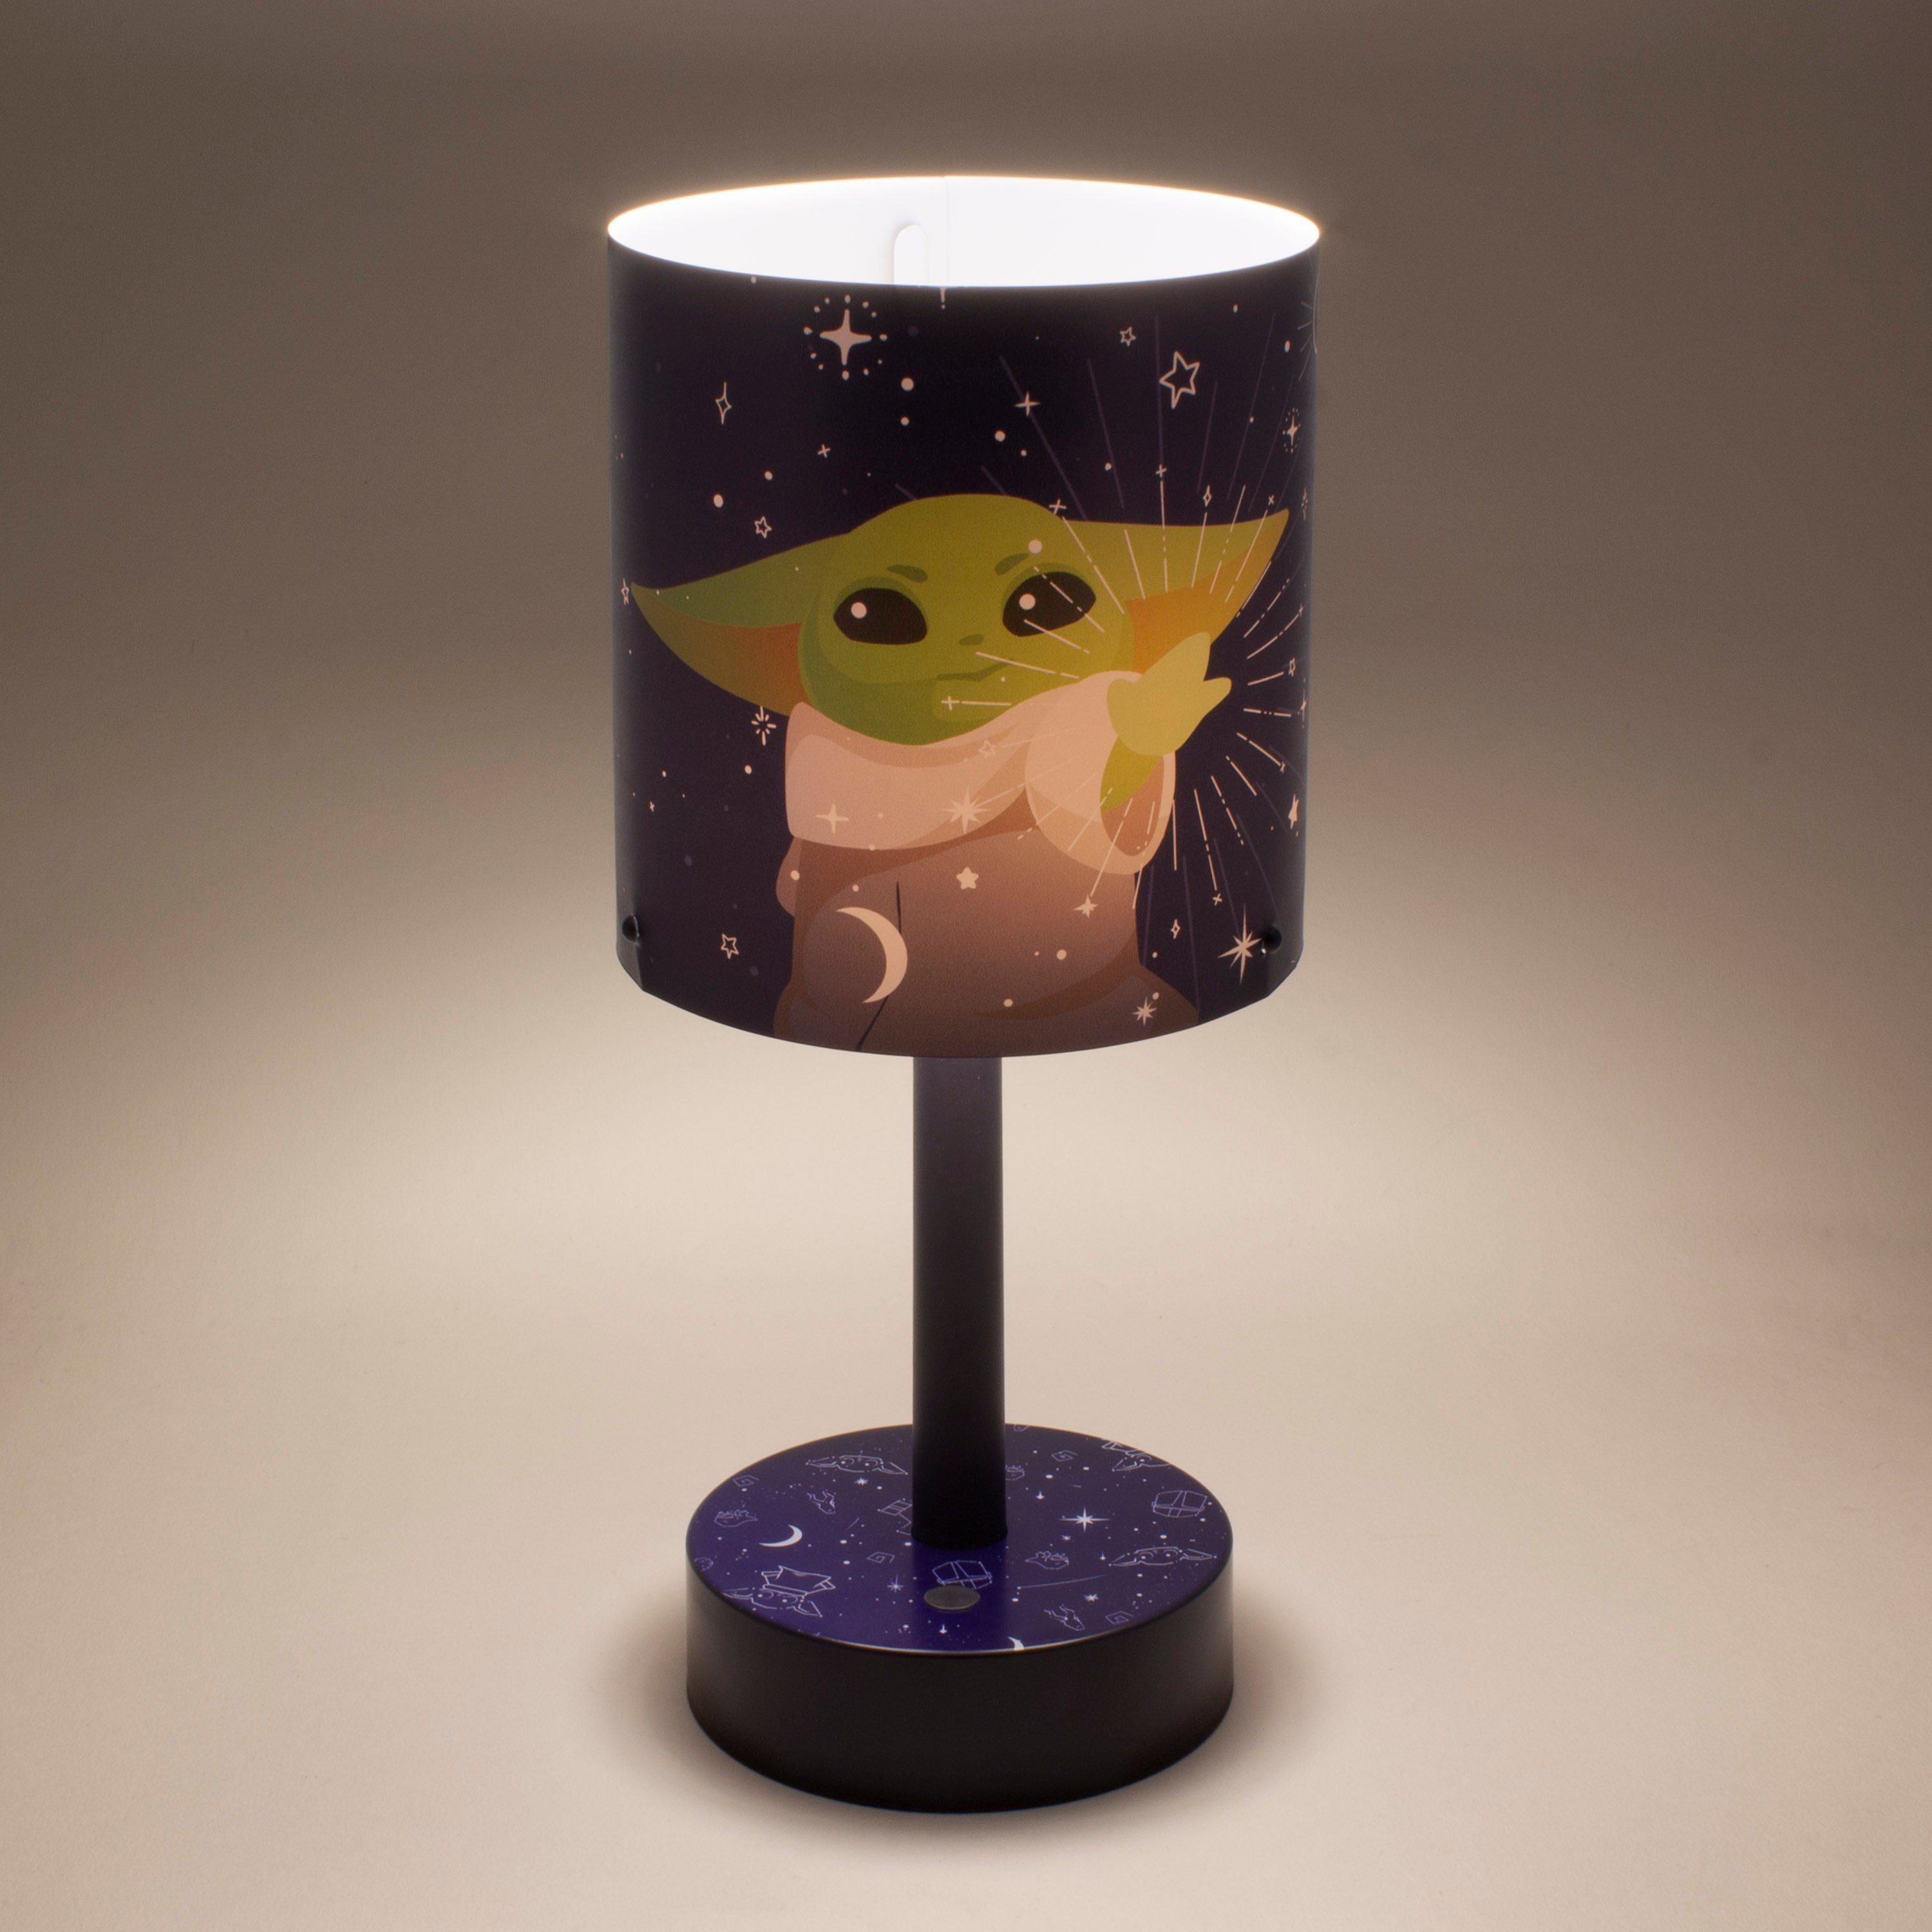 The - Mandalorian Star - Paladone Grogu Wars:The Schreibtischlampe - Child Dekolicht Mini LED